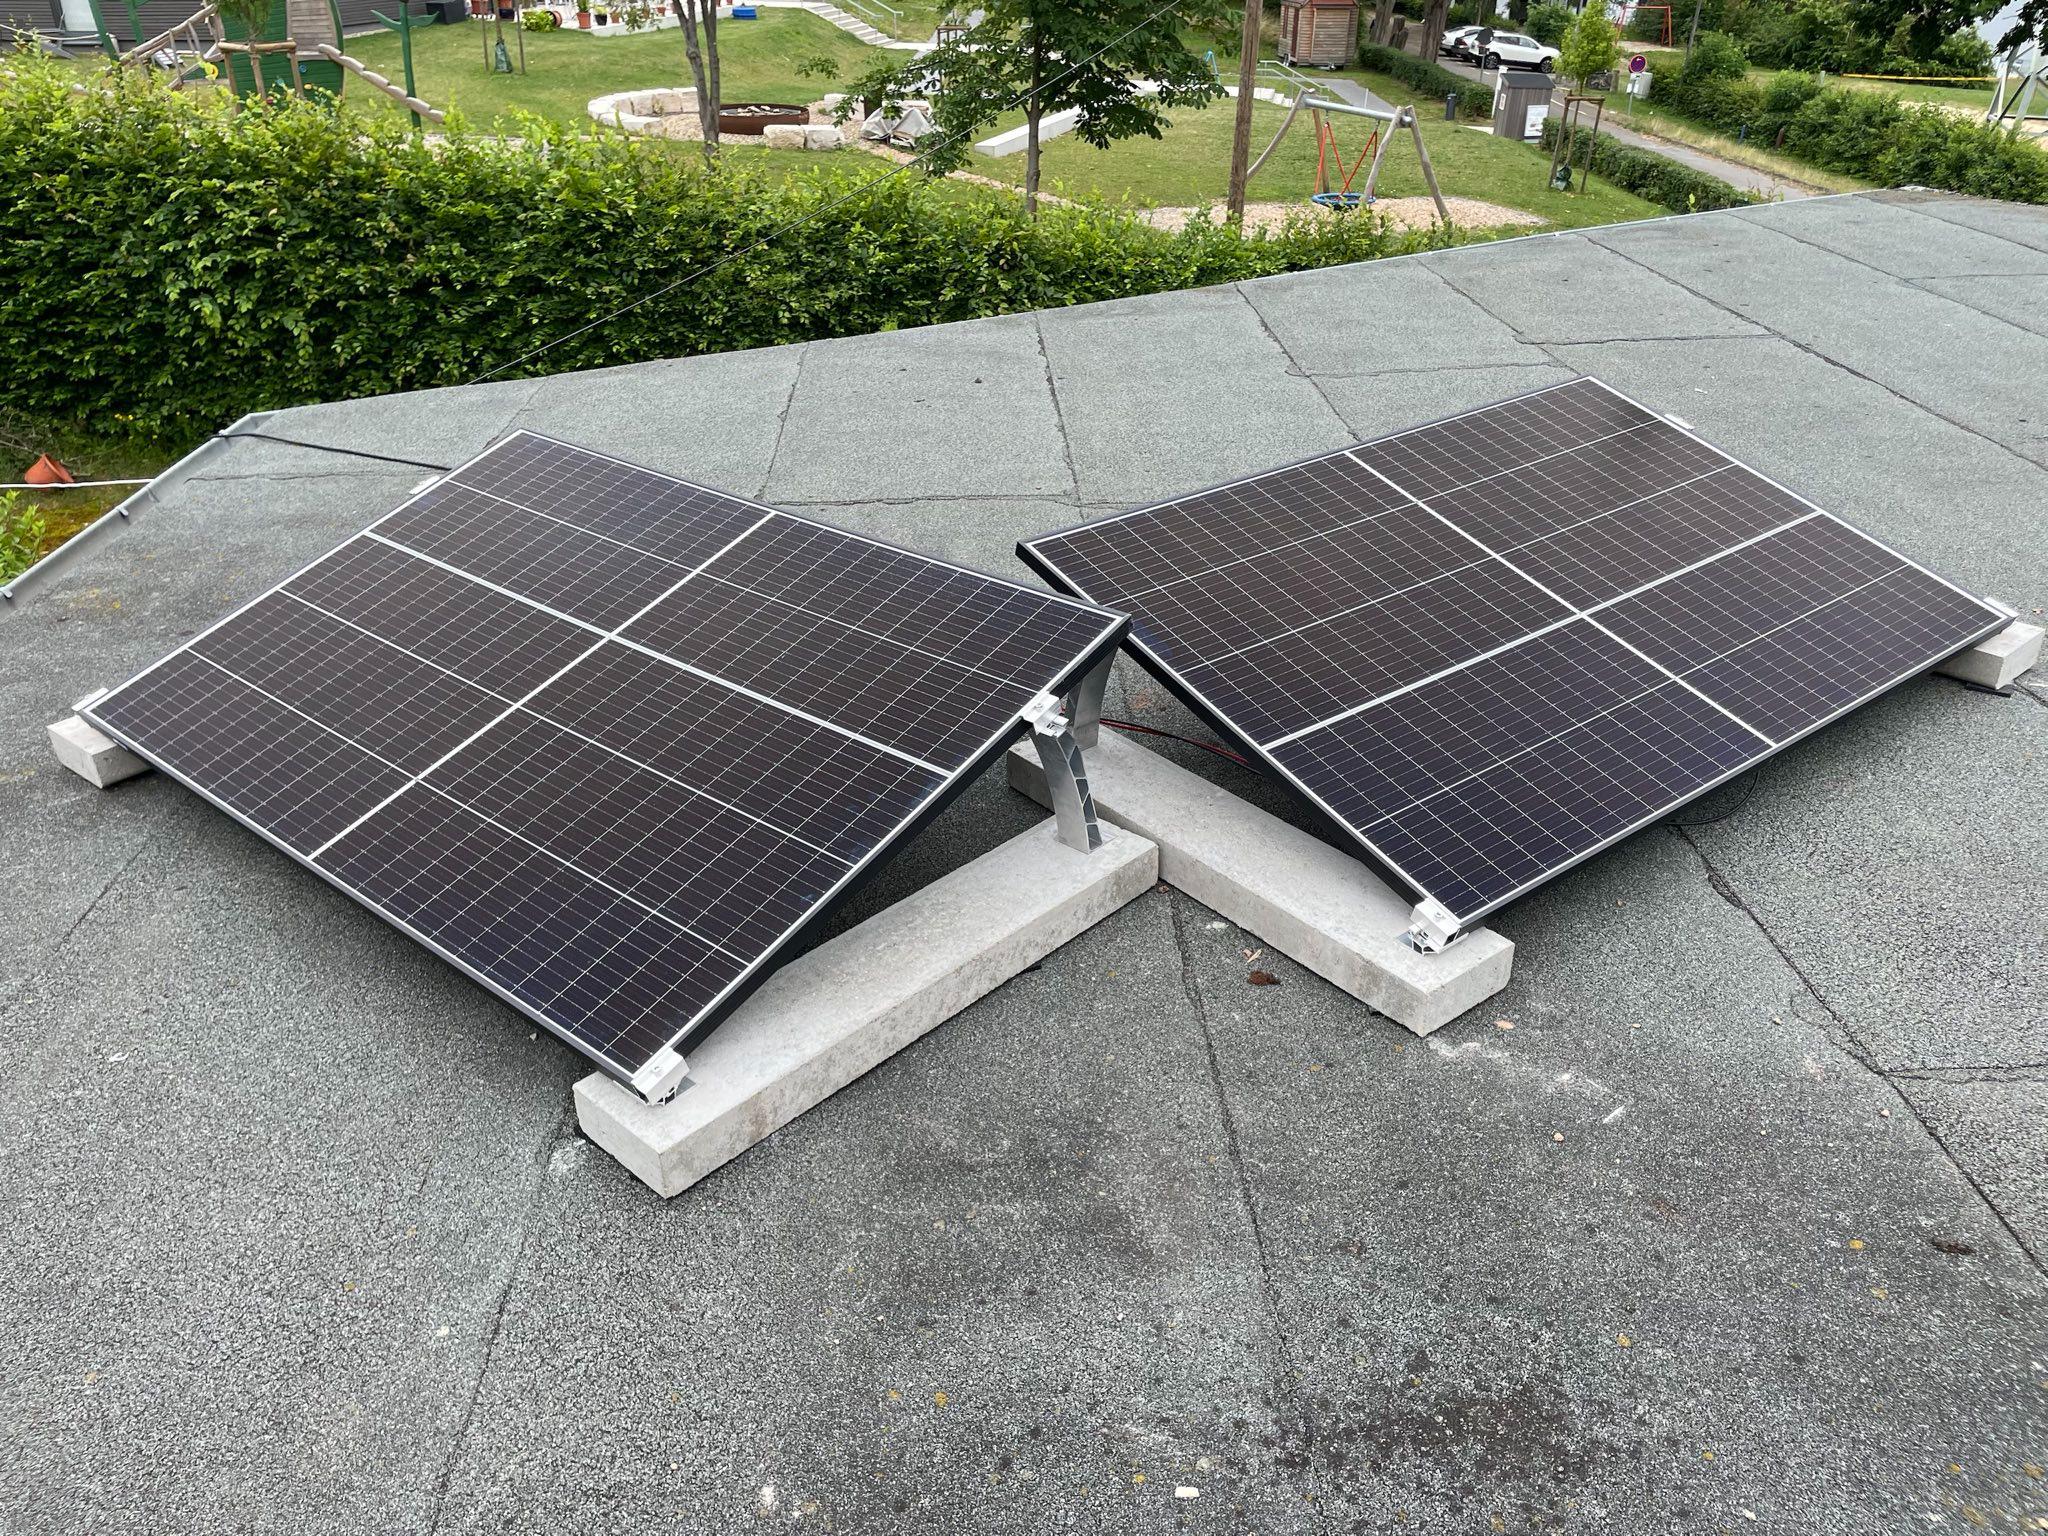 2 Solarpanel auf einem Flachdach, leicht aufgeständert und an Randsteinen befestigt.